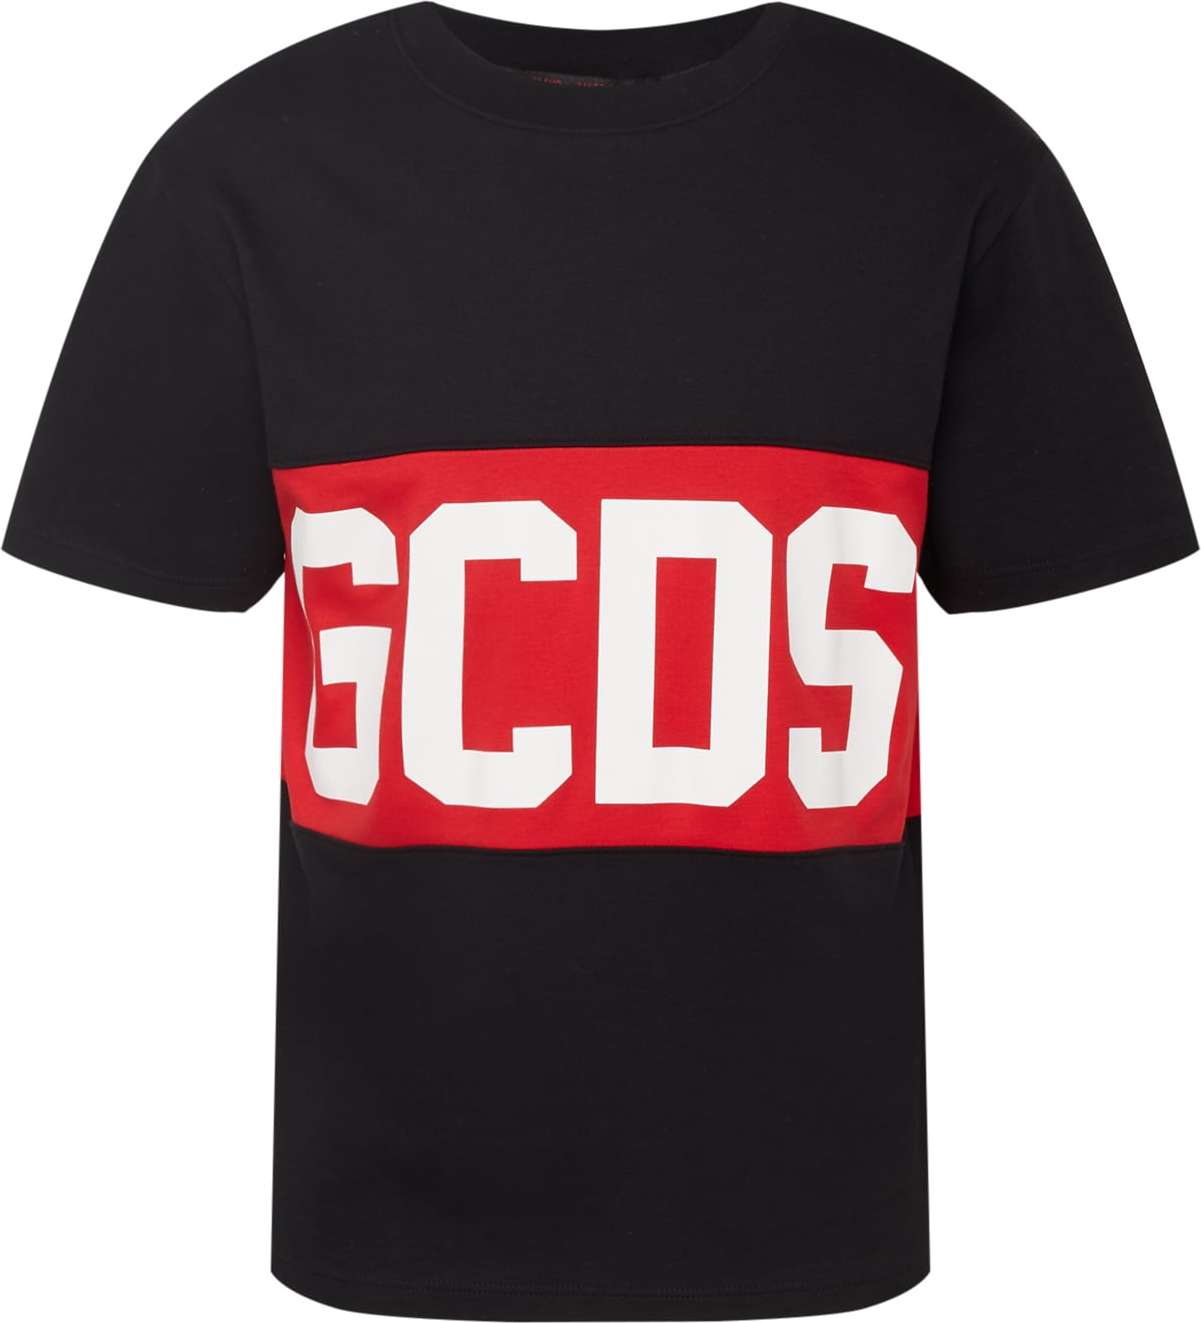 GCDS Tričko červená / černá / bílá